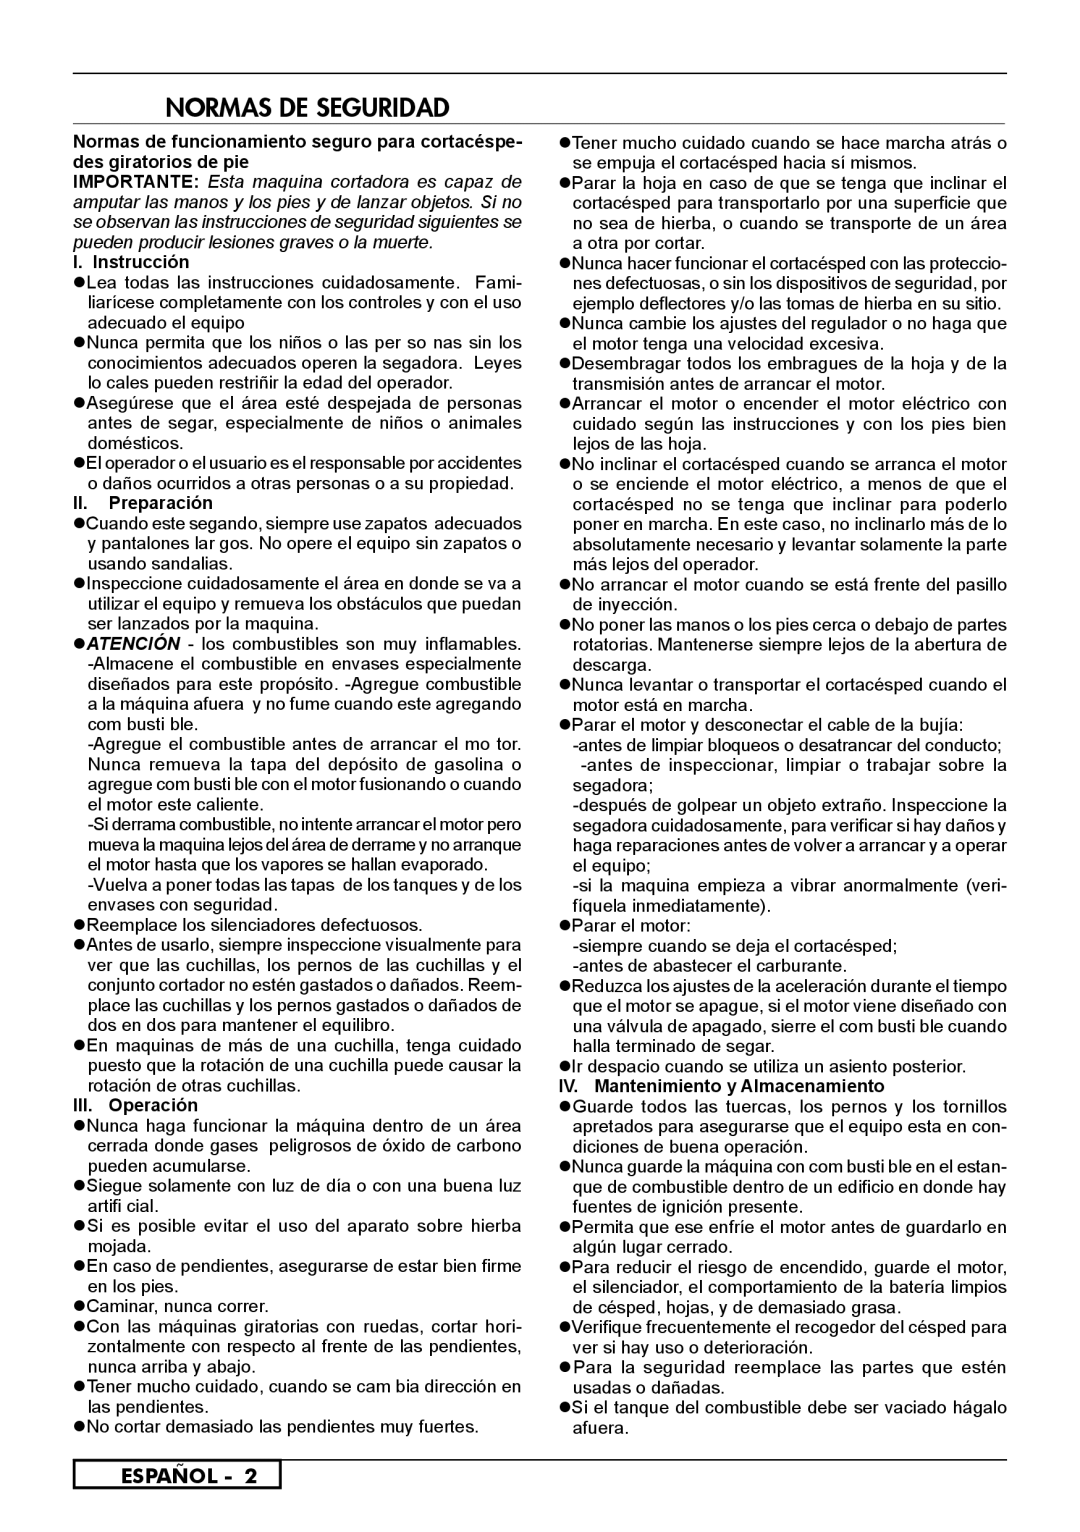 Husqvarna 962000107, 966524101, 962000110 Normas De Seguridad, Español, I. Instrucción, II. Preparación, III. Operación 